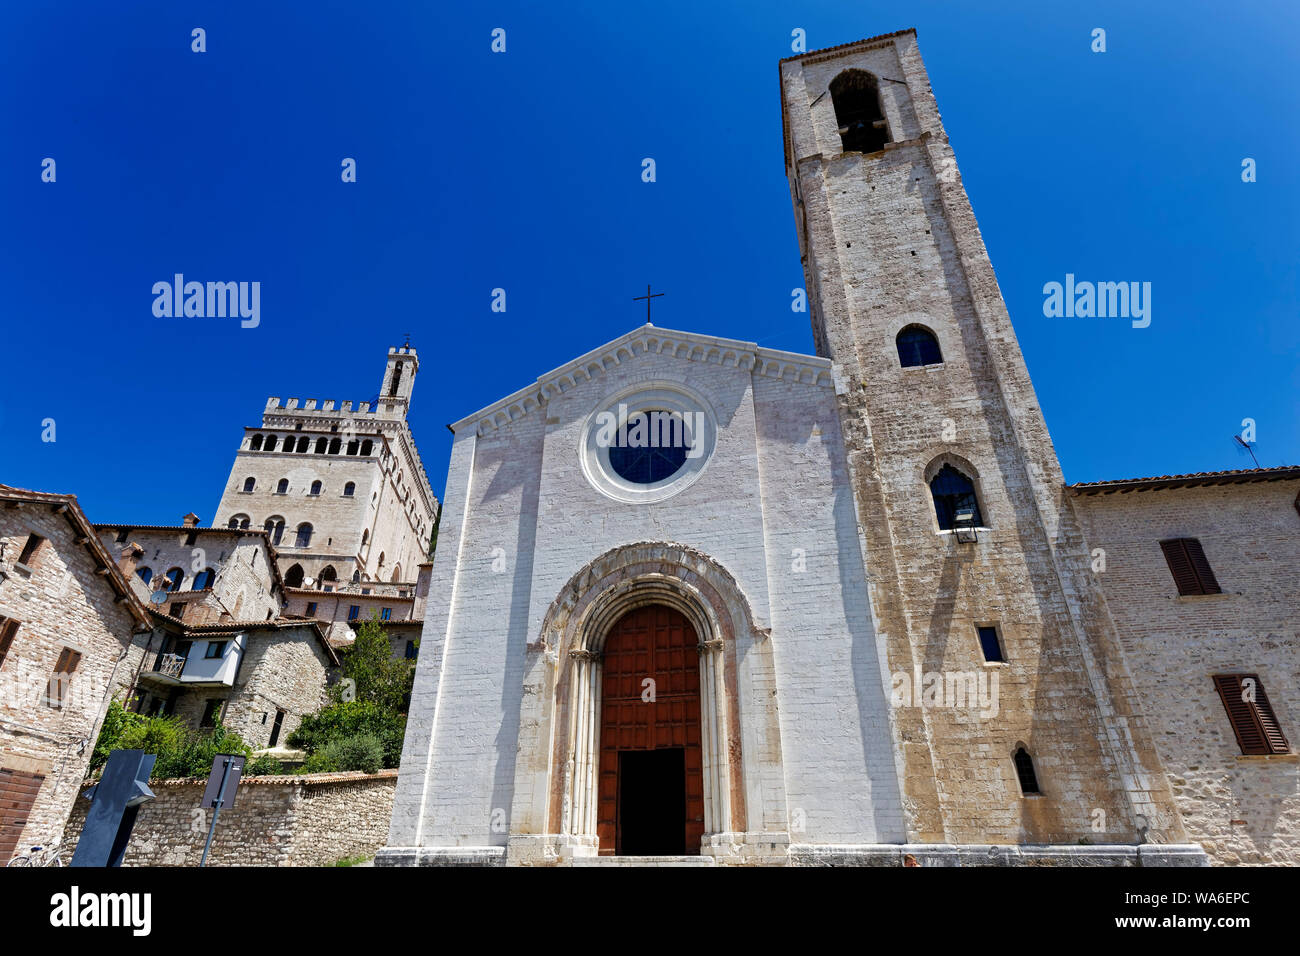 Chiesa di San Giovanni Battista, Gubbio, Umbria, Italy Stock Photo